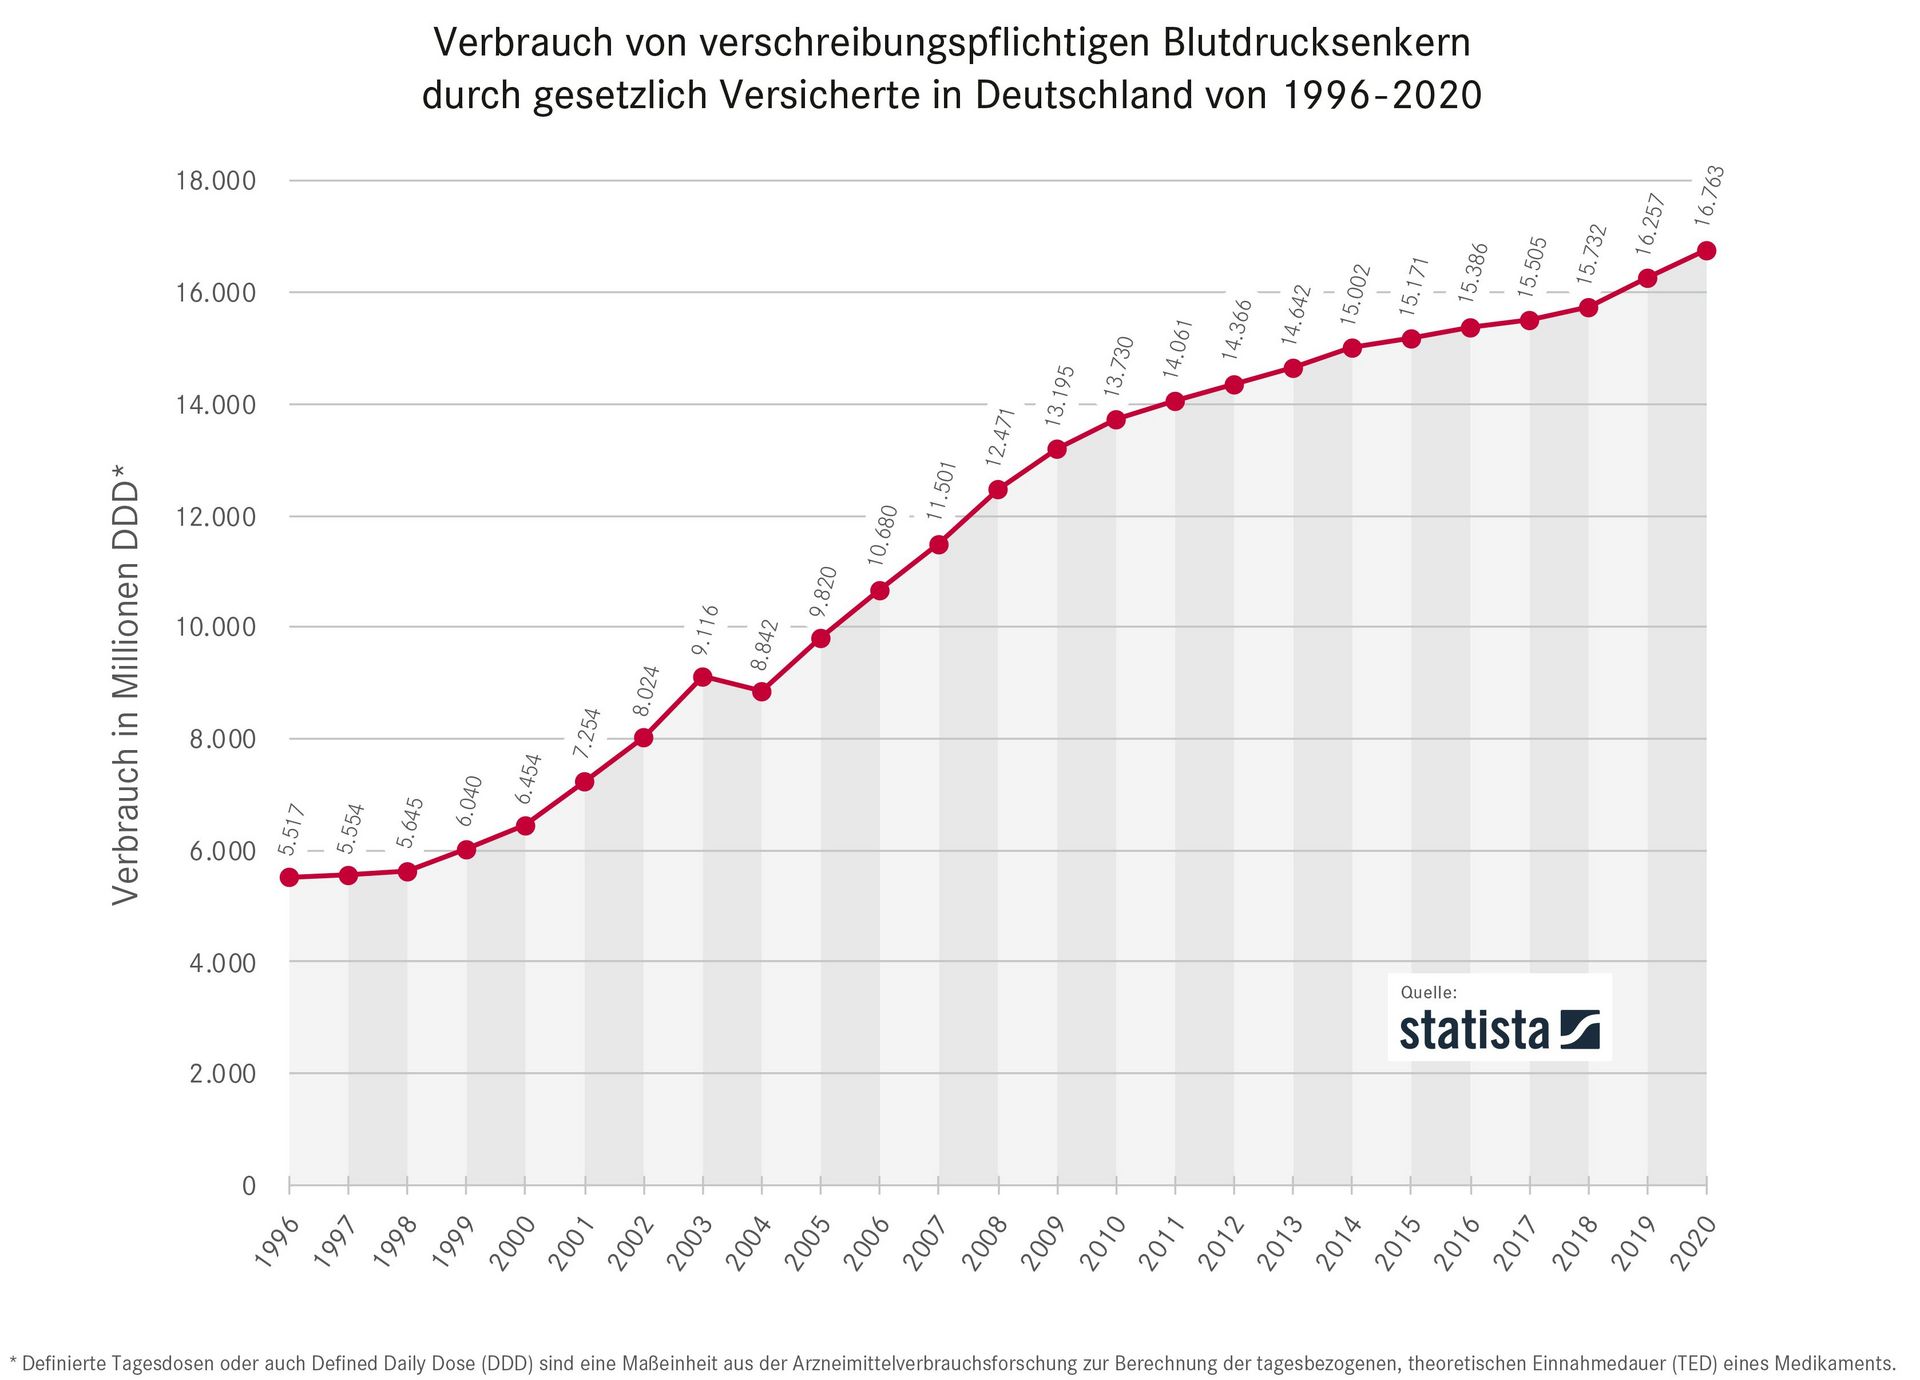 Bluthochdruck - Arzneimittelverbrauch in Deutschland 1996 bis 2020